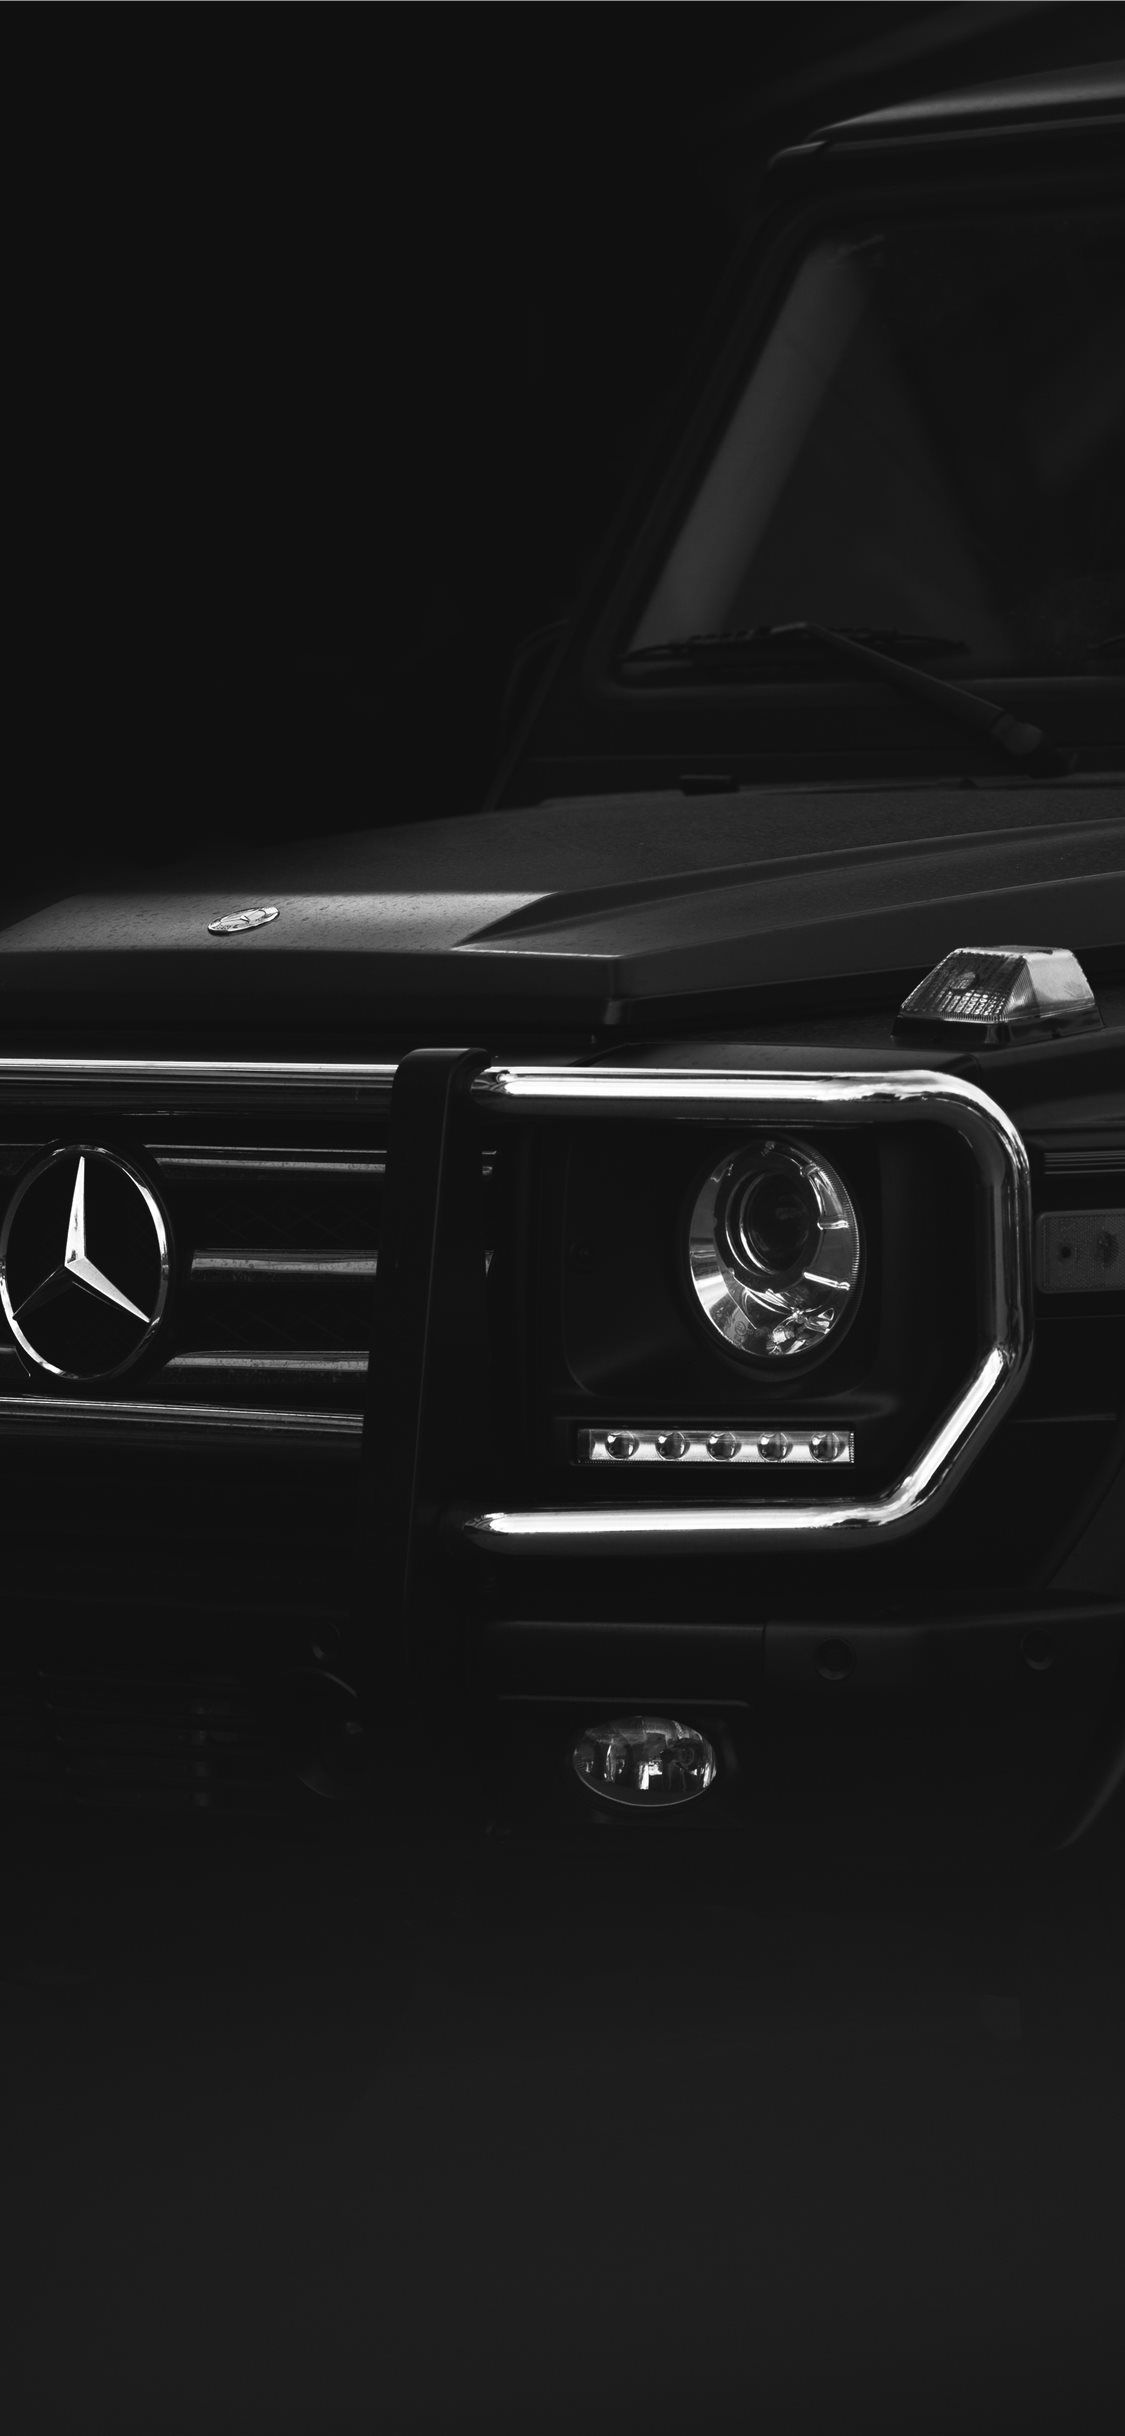 black Mercedes Benz car iPhone X Wallpaper Free Download